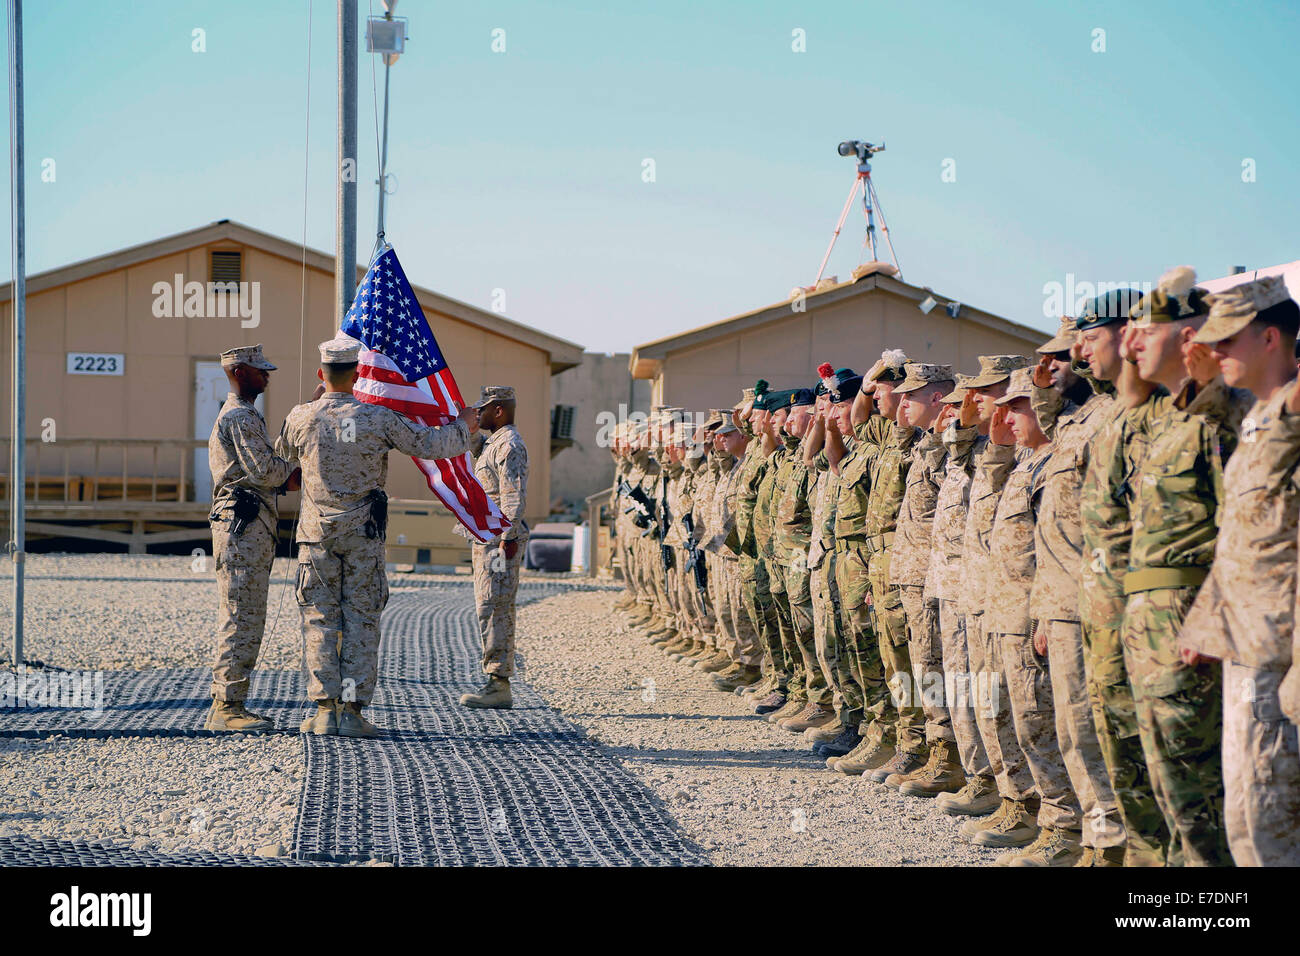 Koalitionstruppen in regionalen Befehl Südwesten Gruß als Flagge der Vereinigten Staaten während der 9/11 Gedenkfeier 11. September 2014 in Camp Leatherneck, Provinz Helmand, Afghanistan ausgelöst wird. Stockfoto